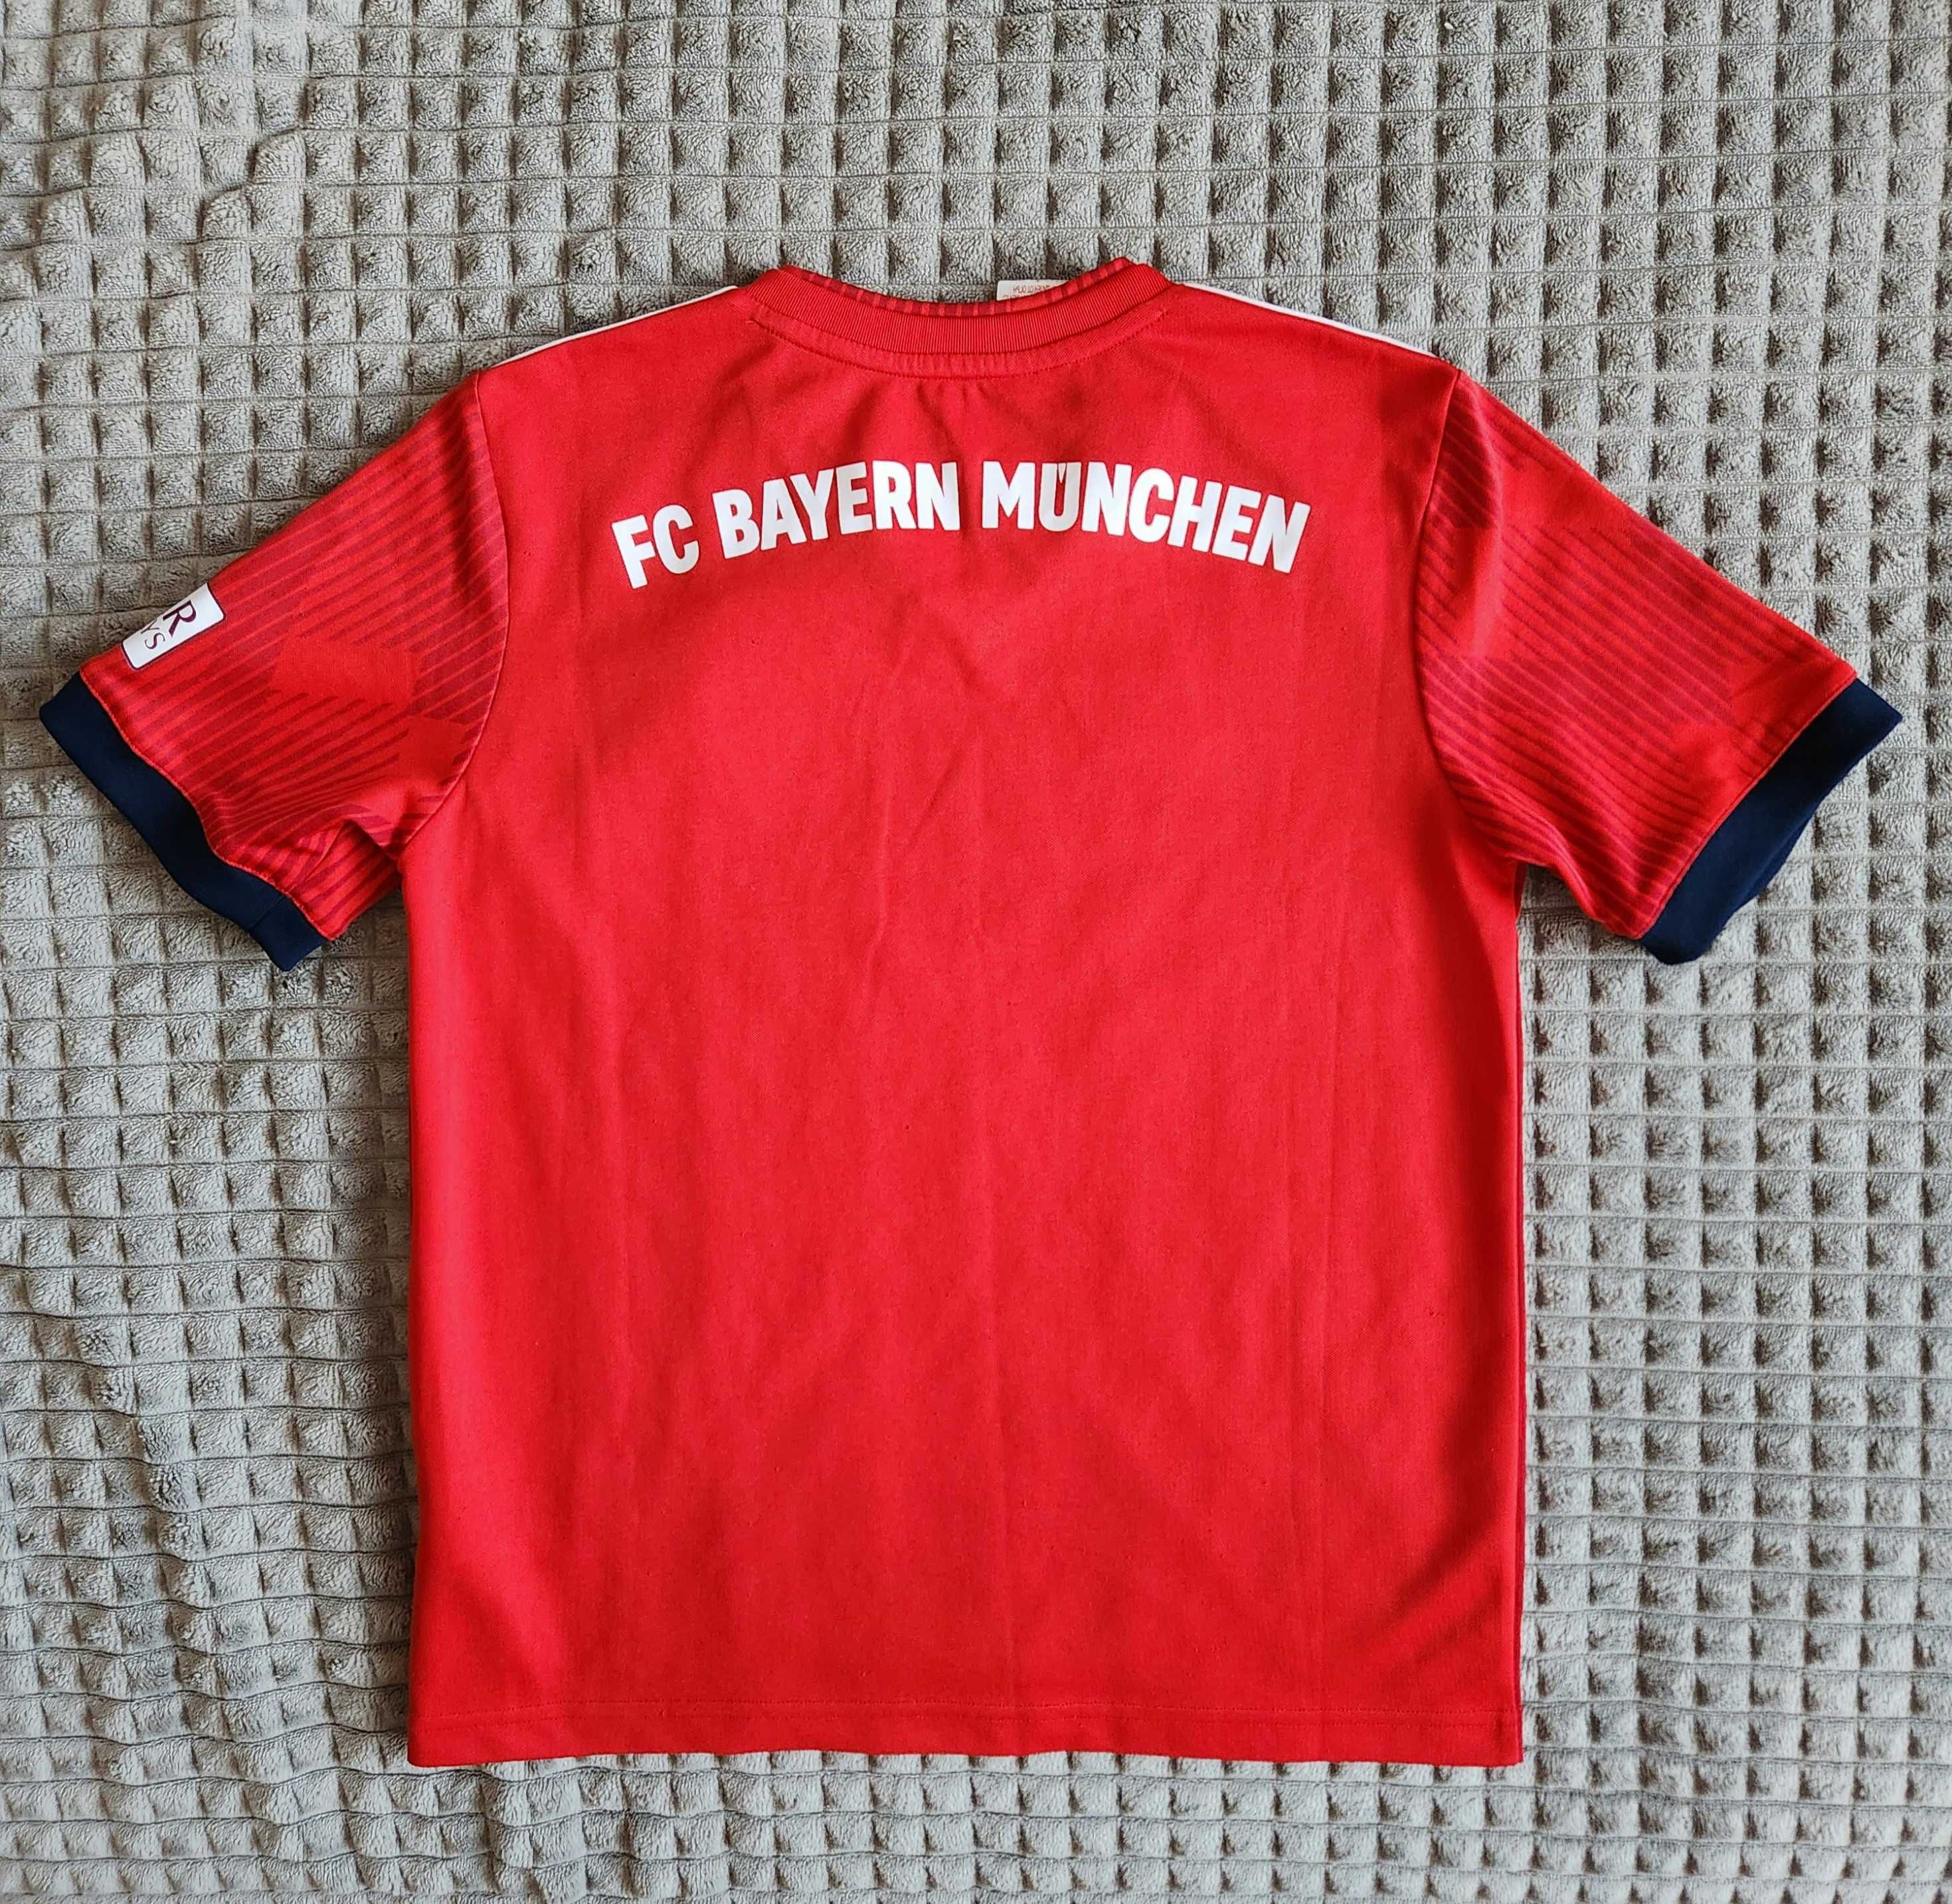 Bayern Monachium Koszulka Piłkarska Czerwona 2018/2019 Domowa Adidas